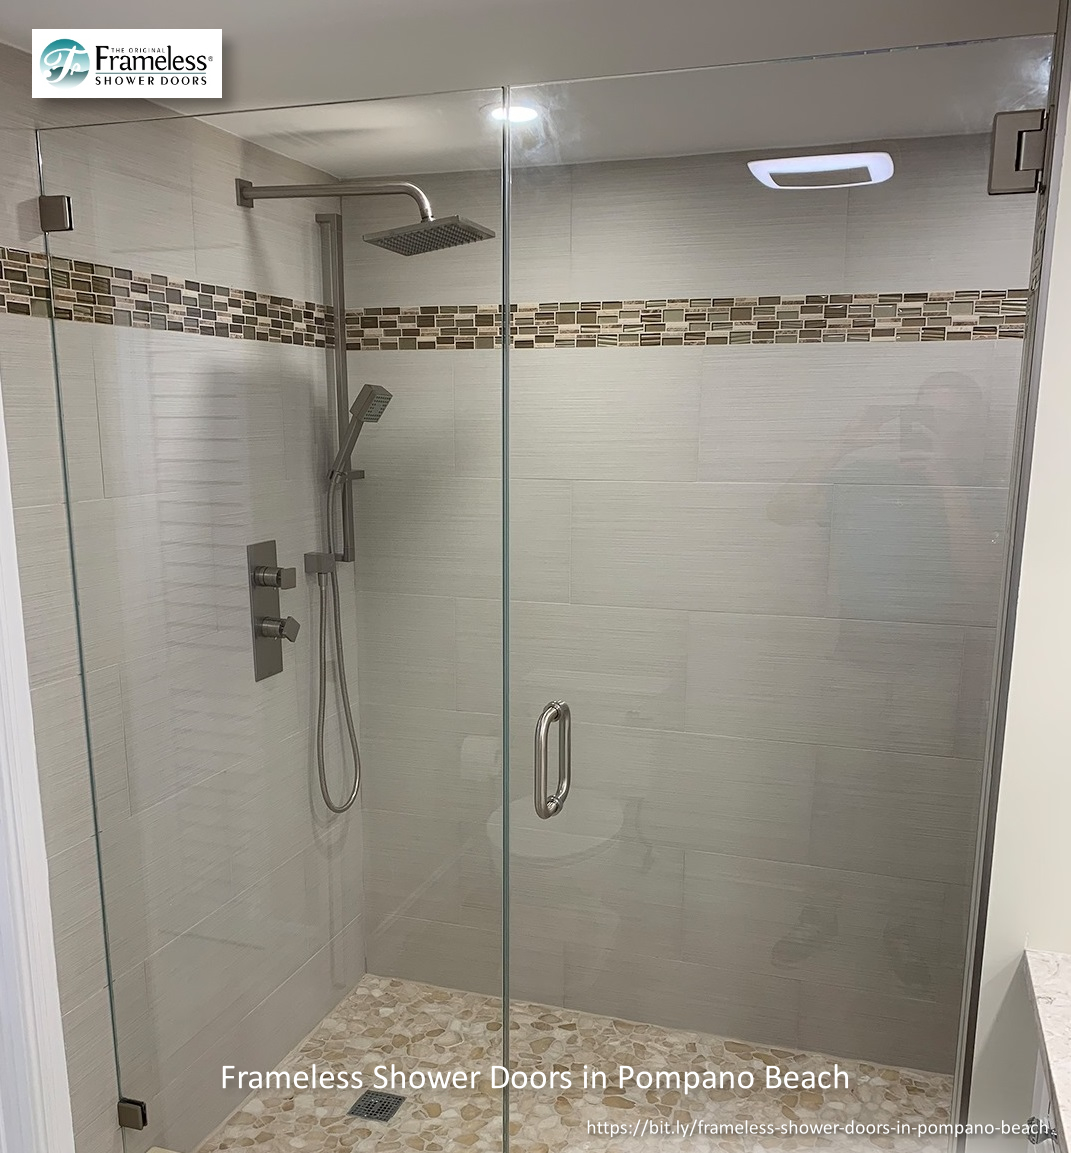 , Frameless Shower Doors for Homes in Pompano Beach, Florida, Frameless Shower Doors